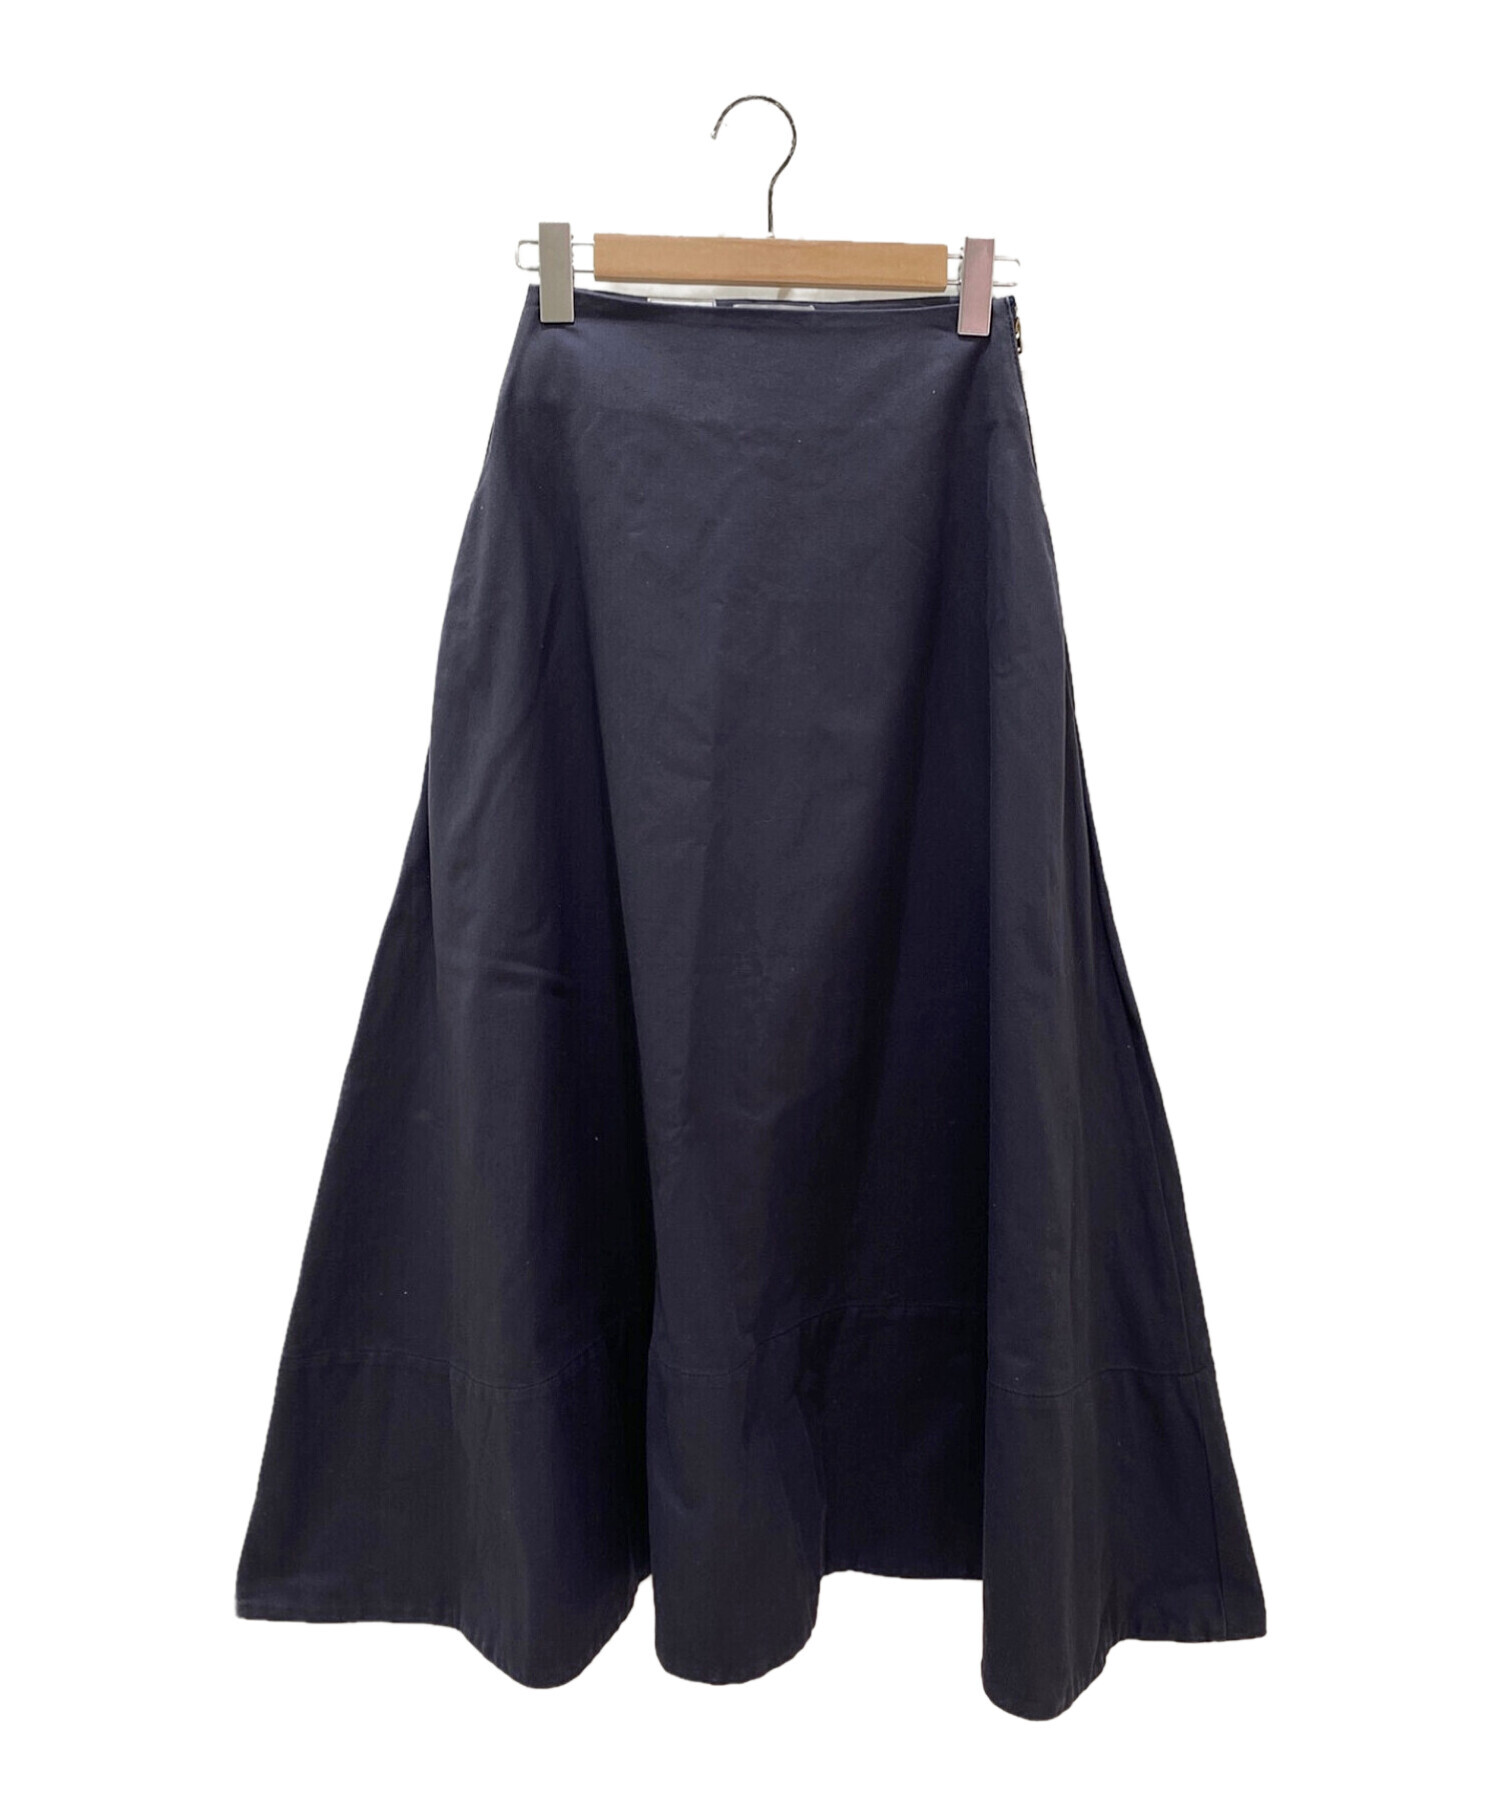 60cmヒップマディソンブルー MADISONBLUE ロングスカート フレア 00 XS 紺